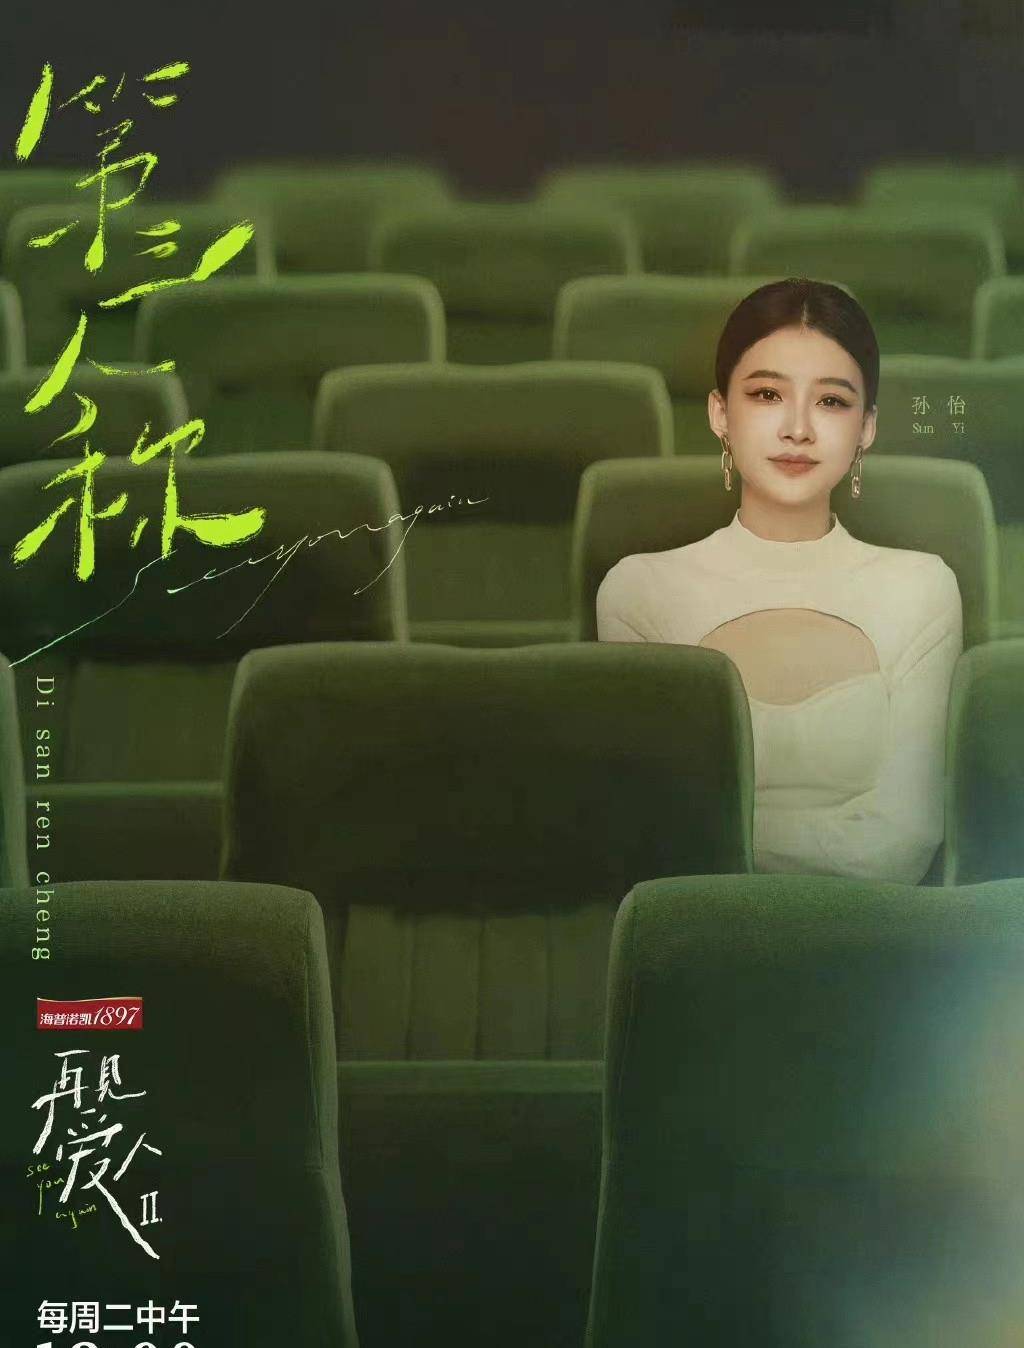 孙怡《再见爱人2》海报上线,网友:真好看!